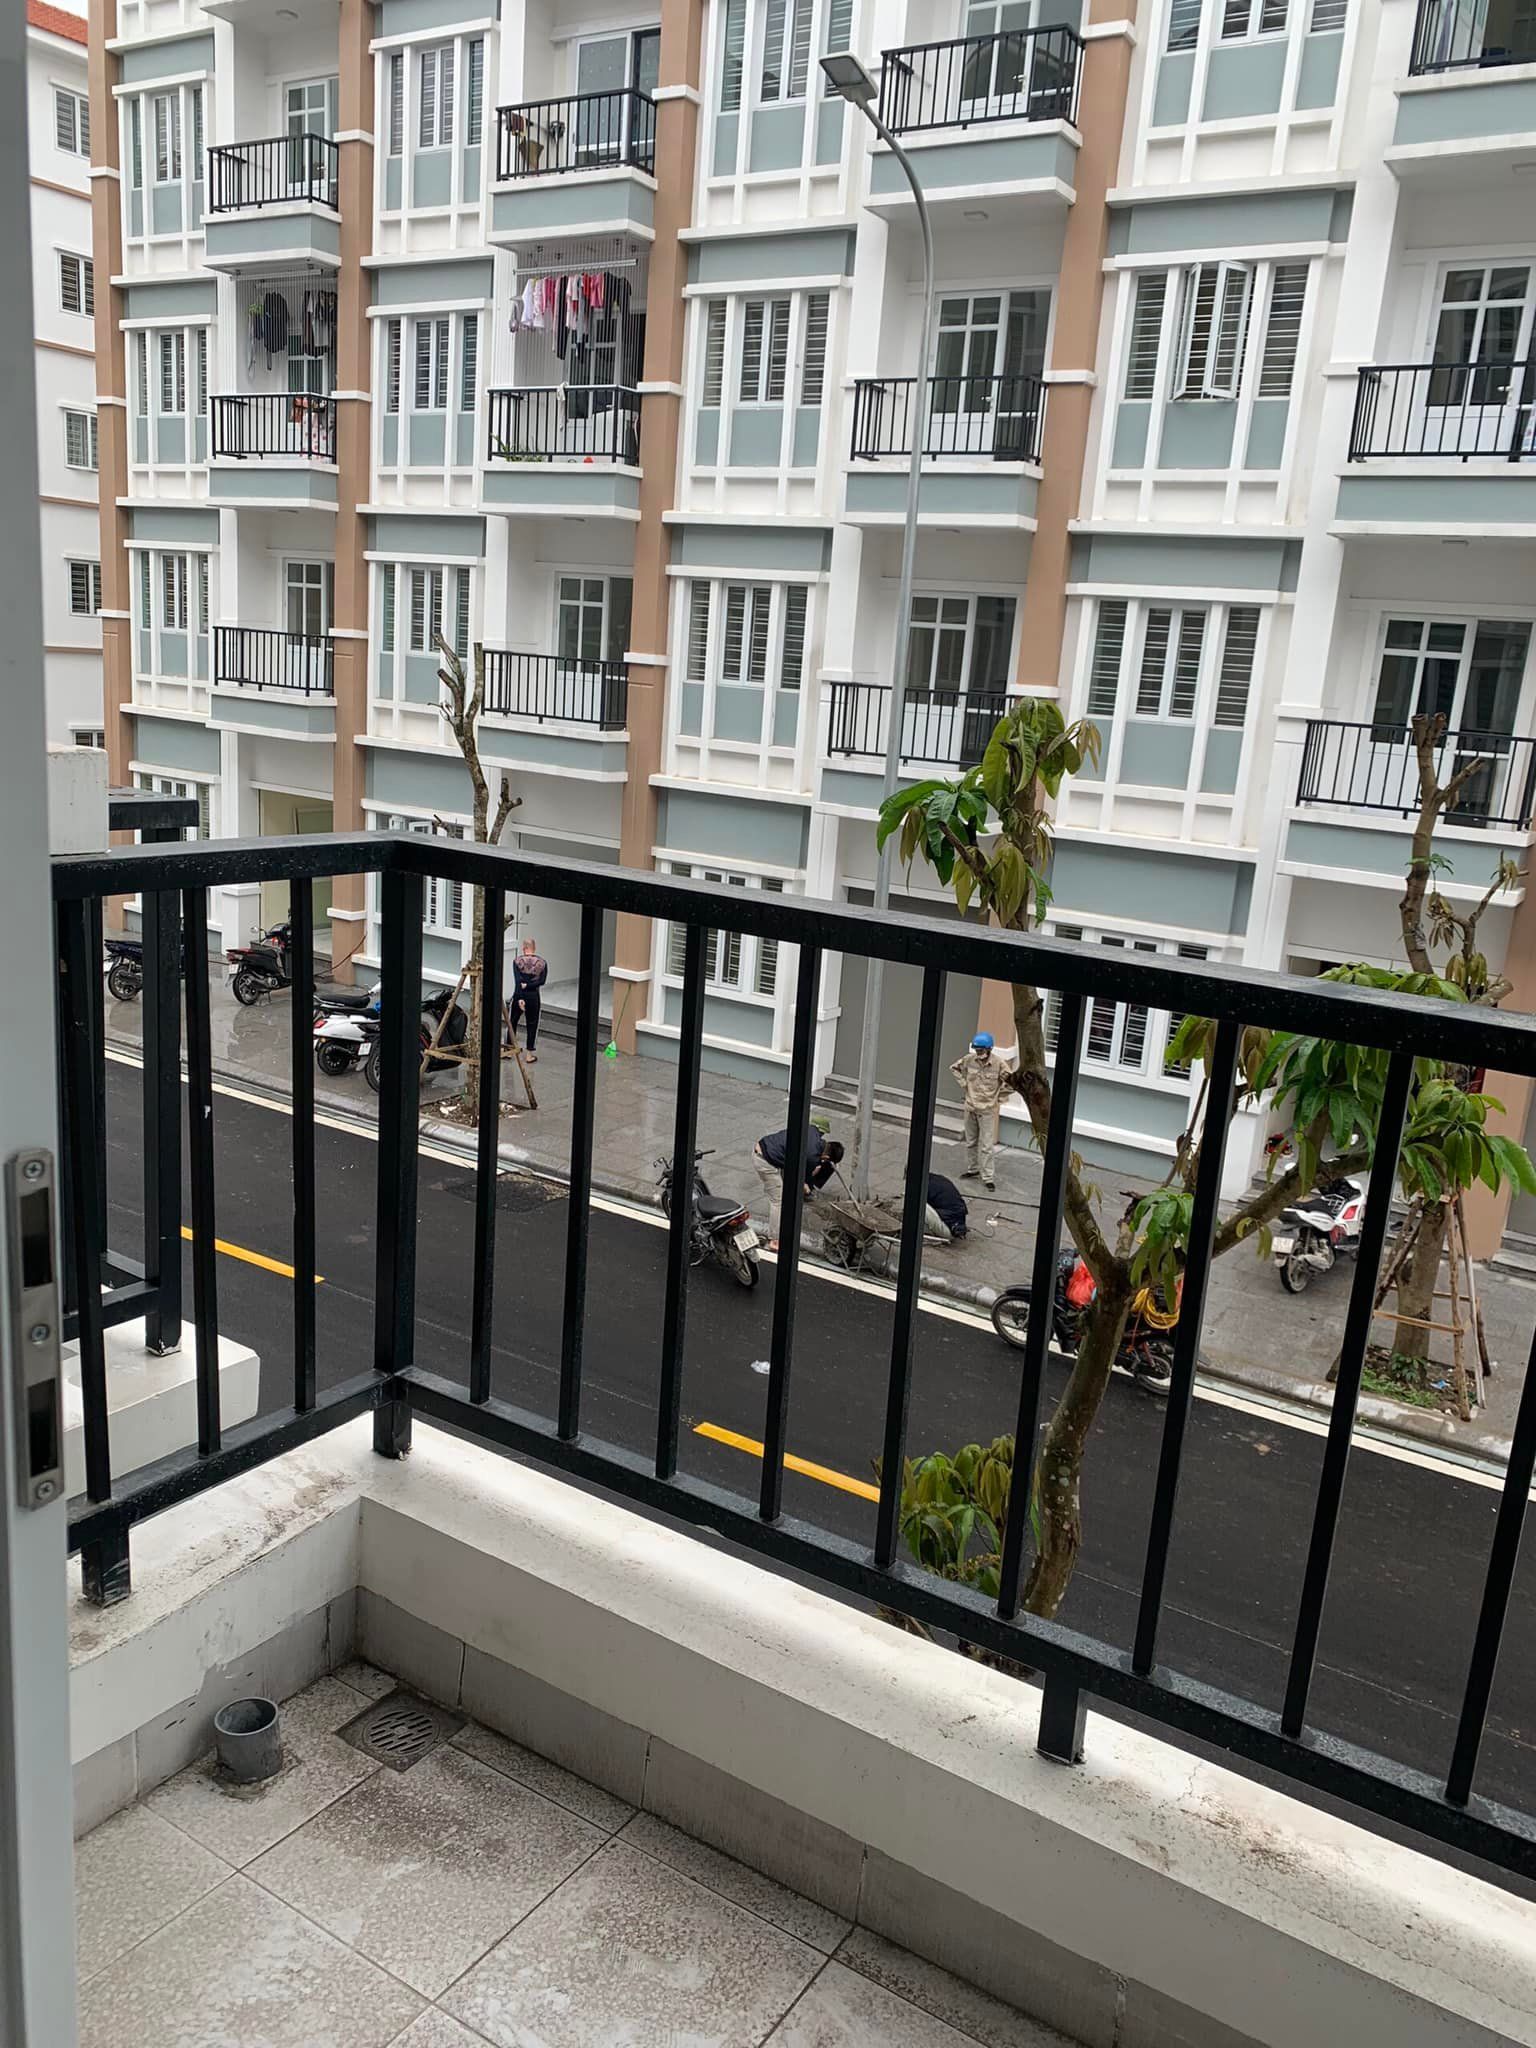 Bán căn hộ tầng 5 khu chung cư mới dự án Hoàng Huy An Đồng.